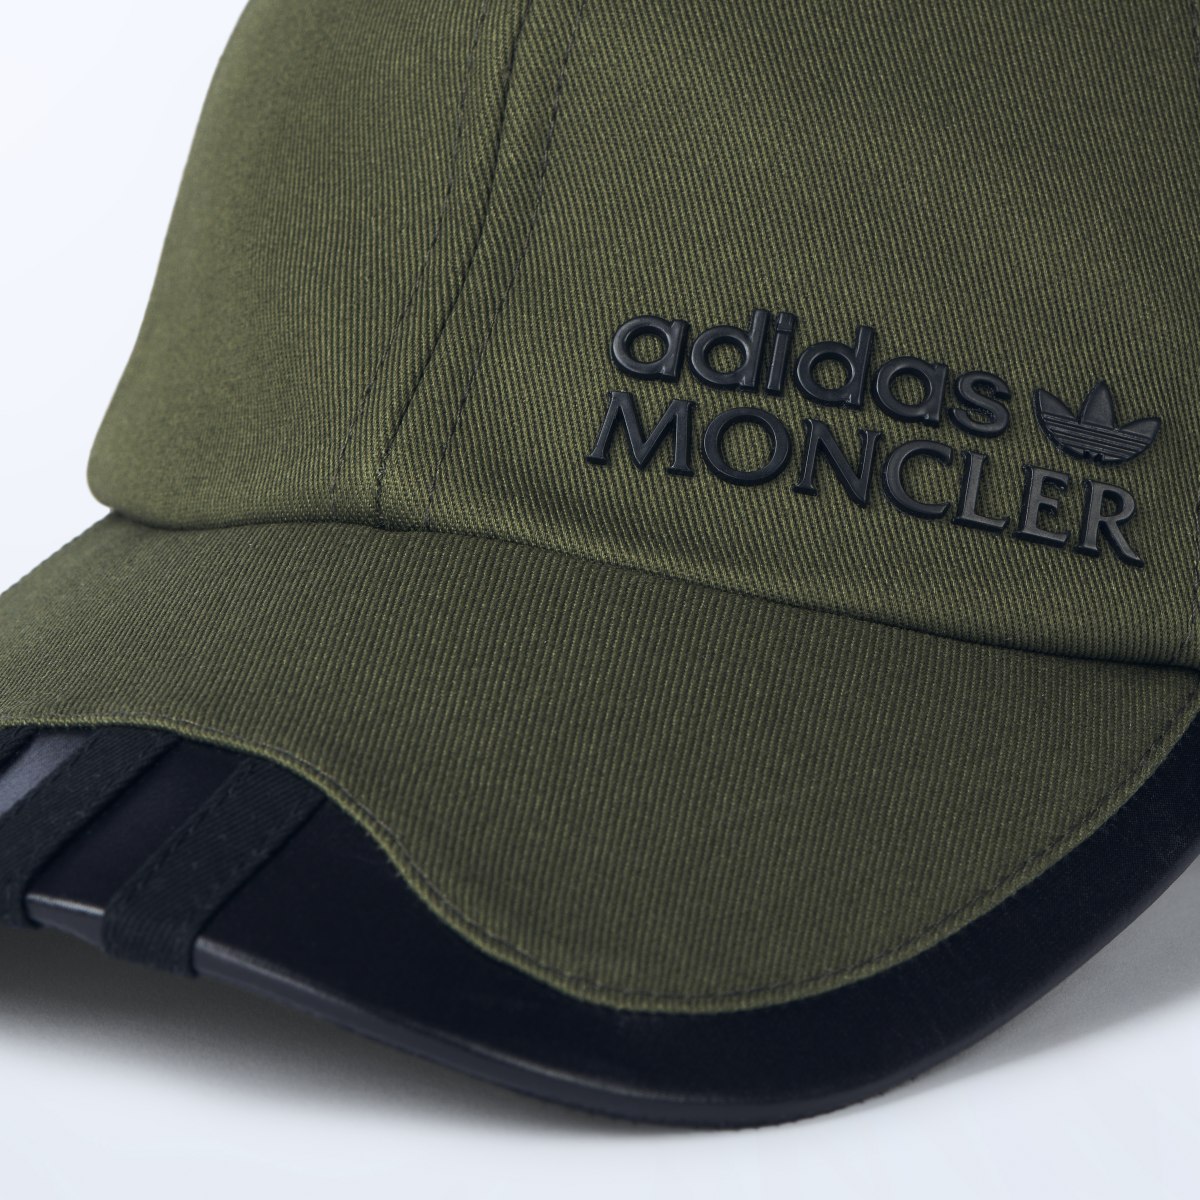 Adidas Moncler x adidas Originals Baseball Cap. 4